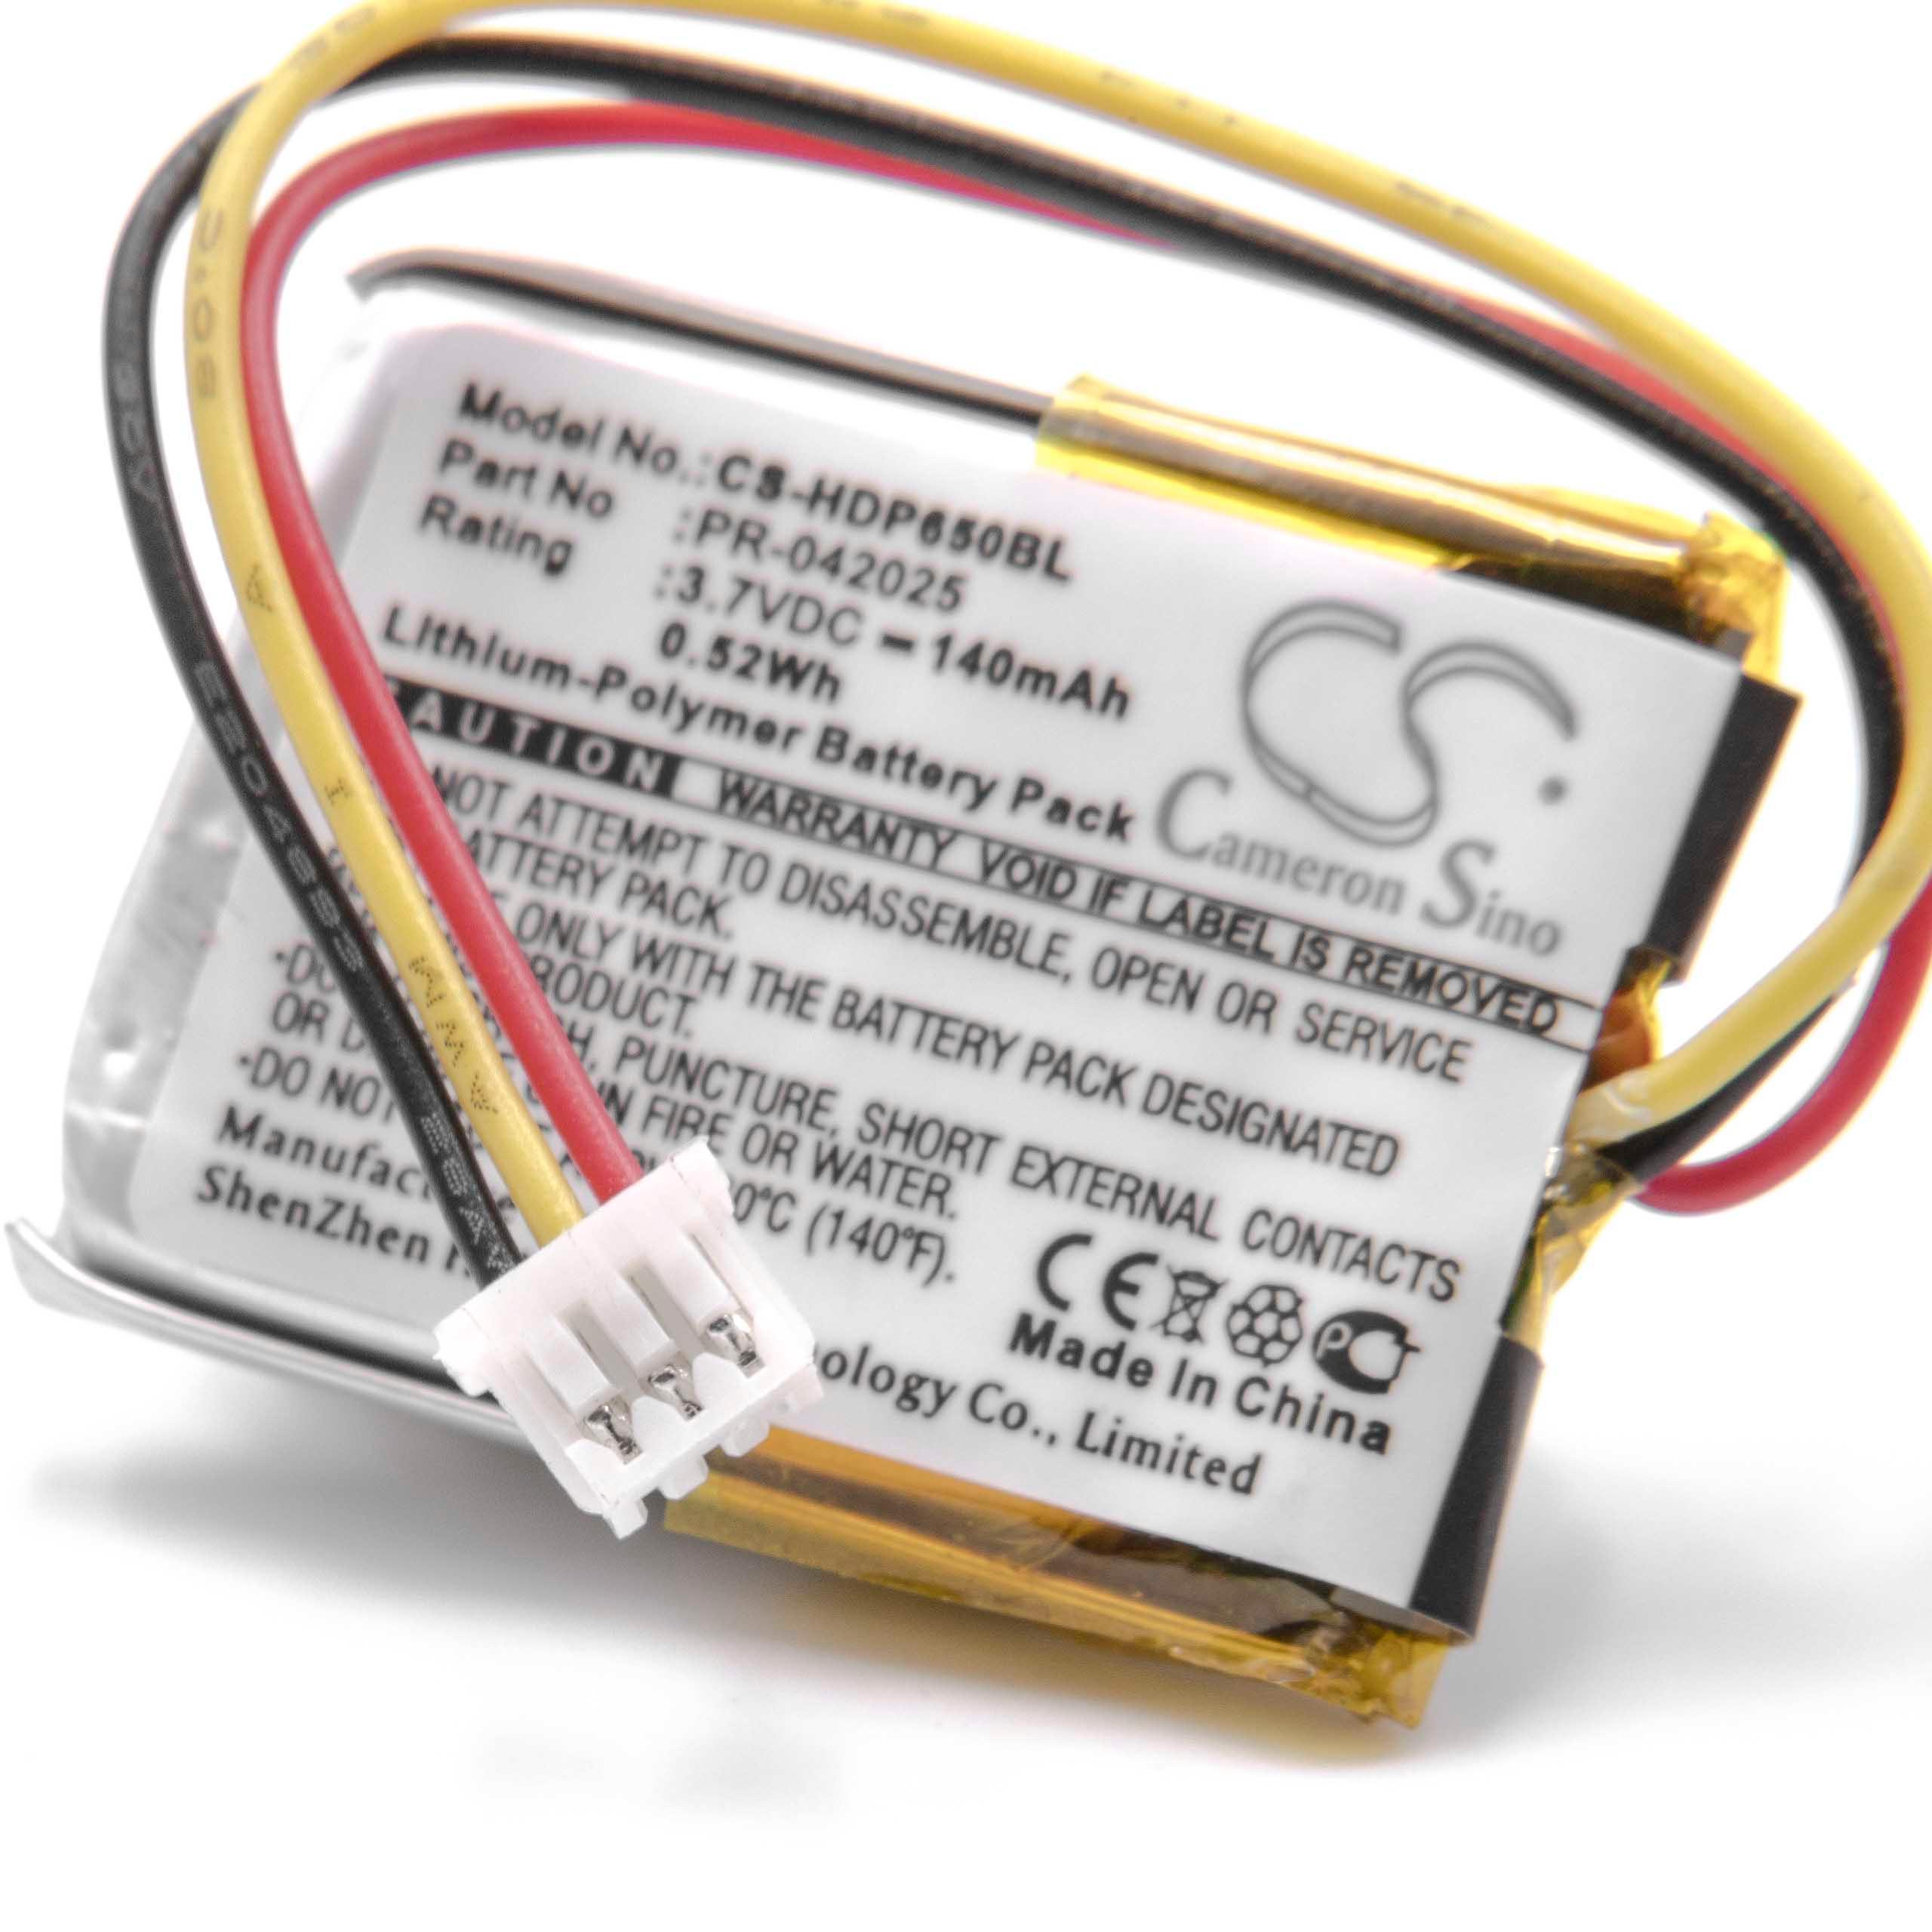 Akumulator do czytnika kodów kreskowych zamiennik Honeywell PR-042025 - 140 mAh 3,7 V LiPo